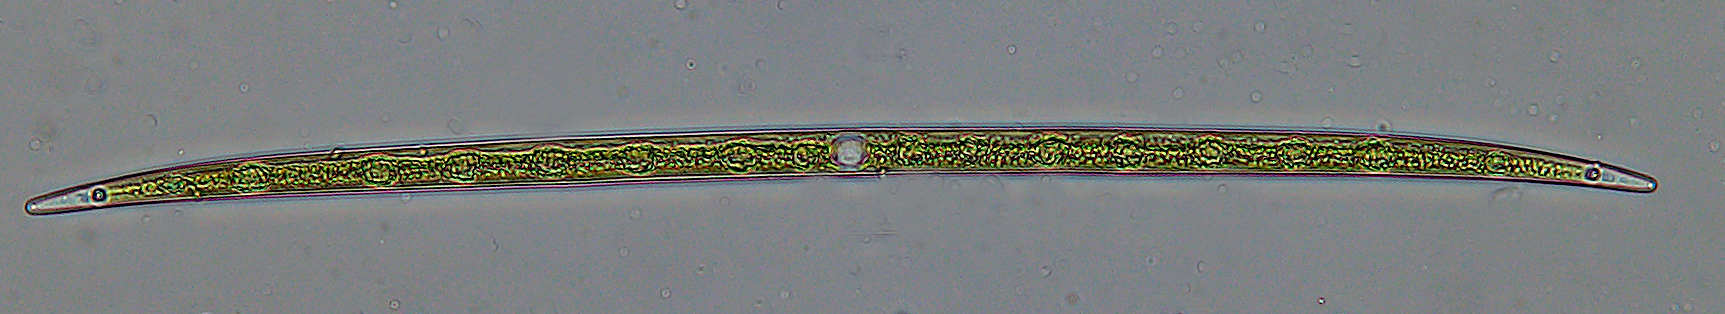 Closterium lineatum zöldalga, mérete kb. 500 x 14 mikrométer. Fénykép: Vörös Lajos